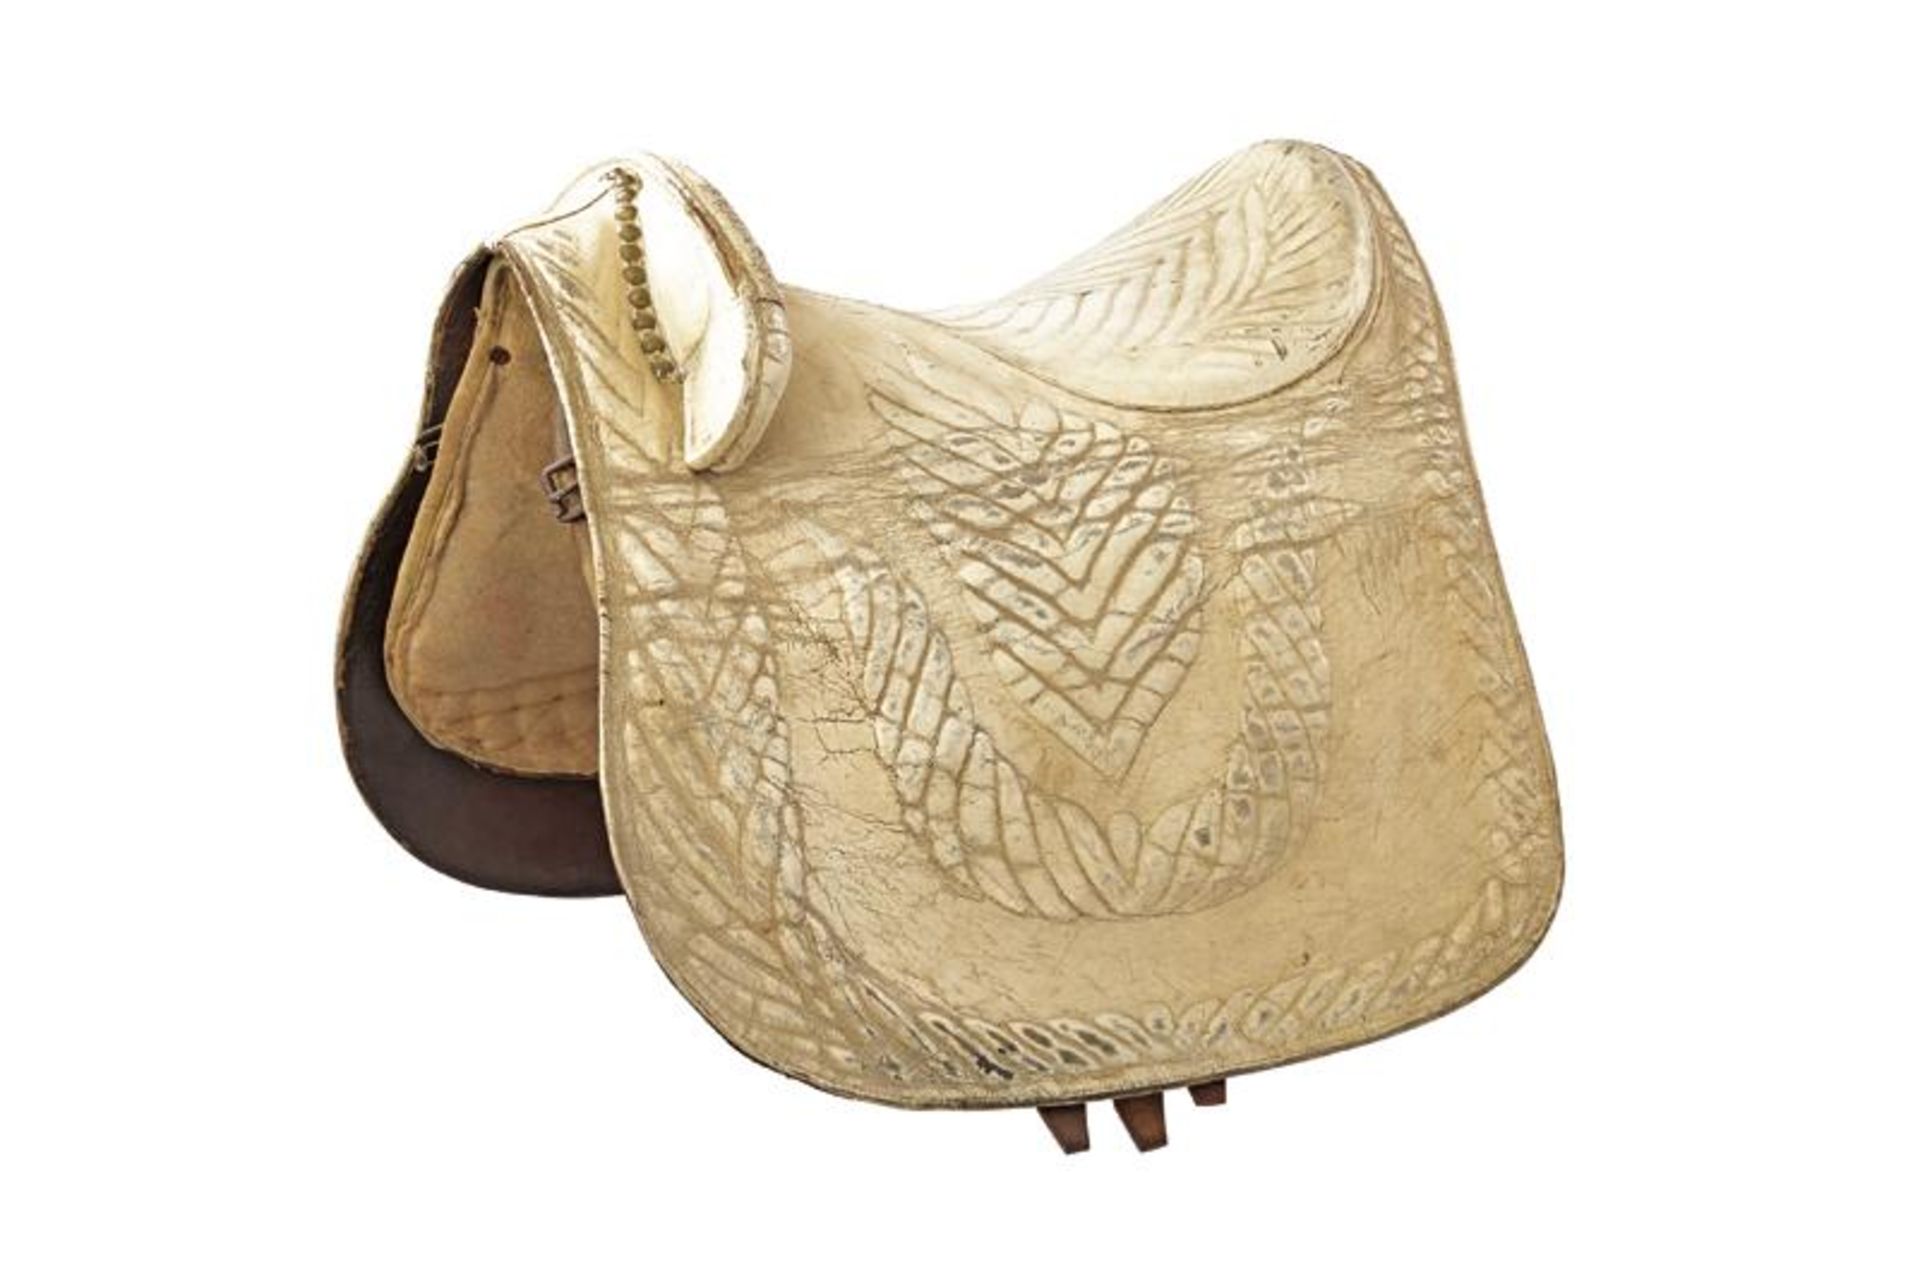 A white leather saddle